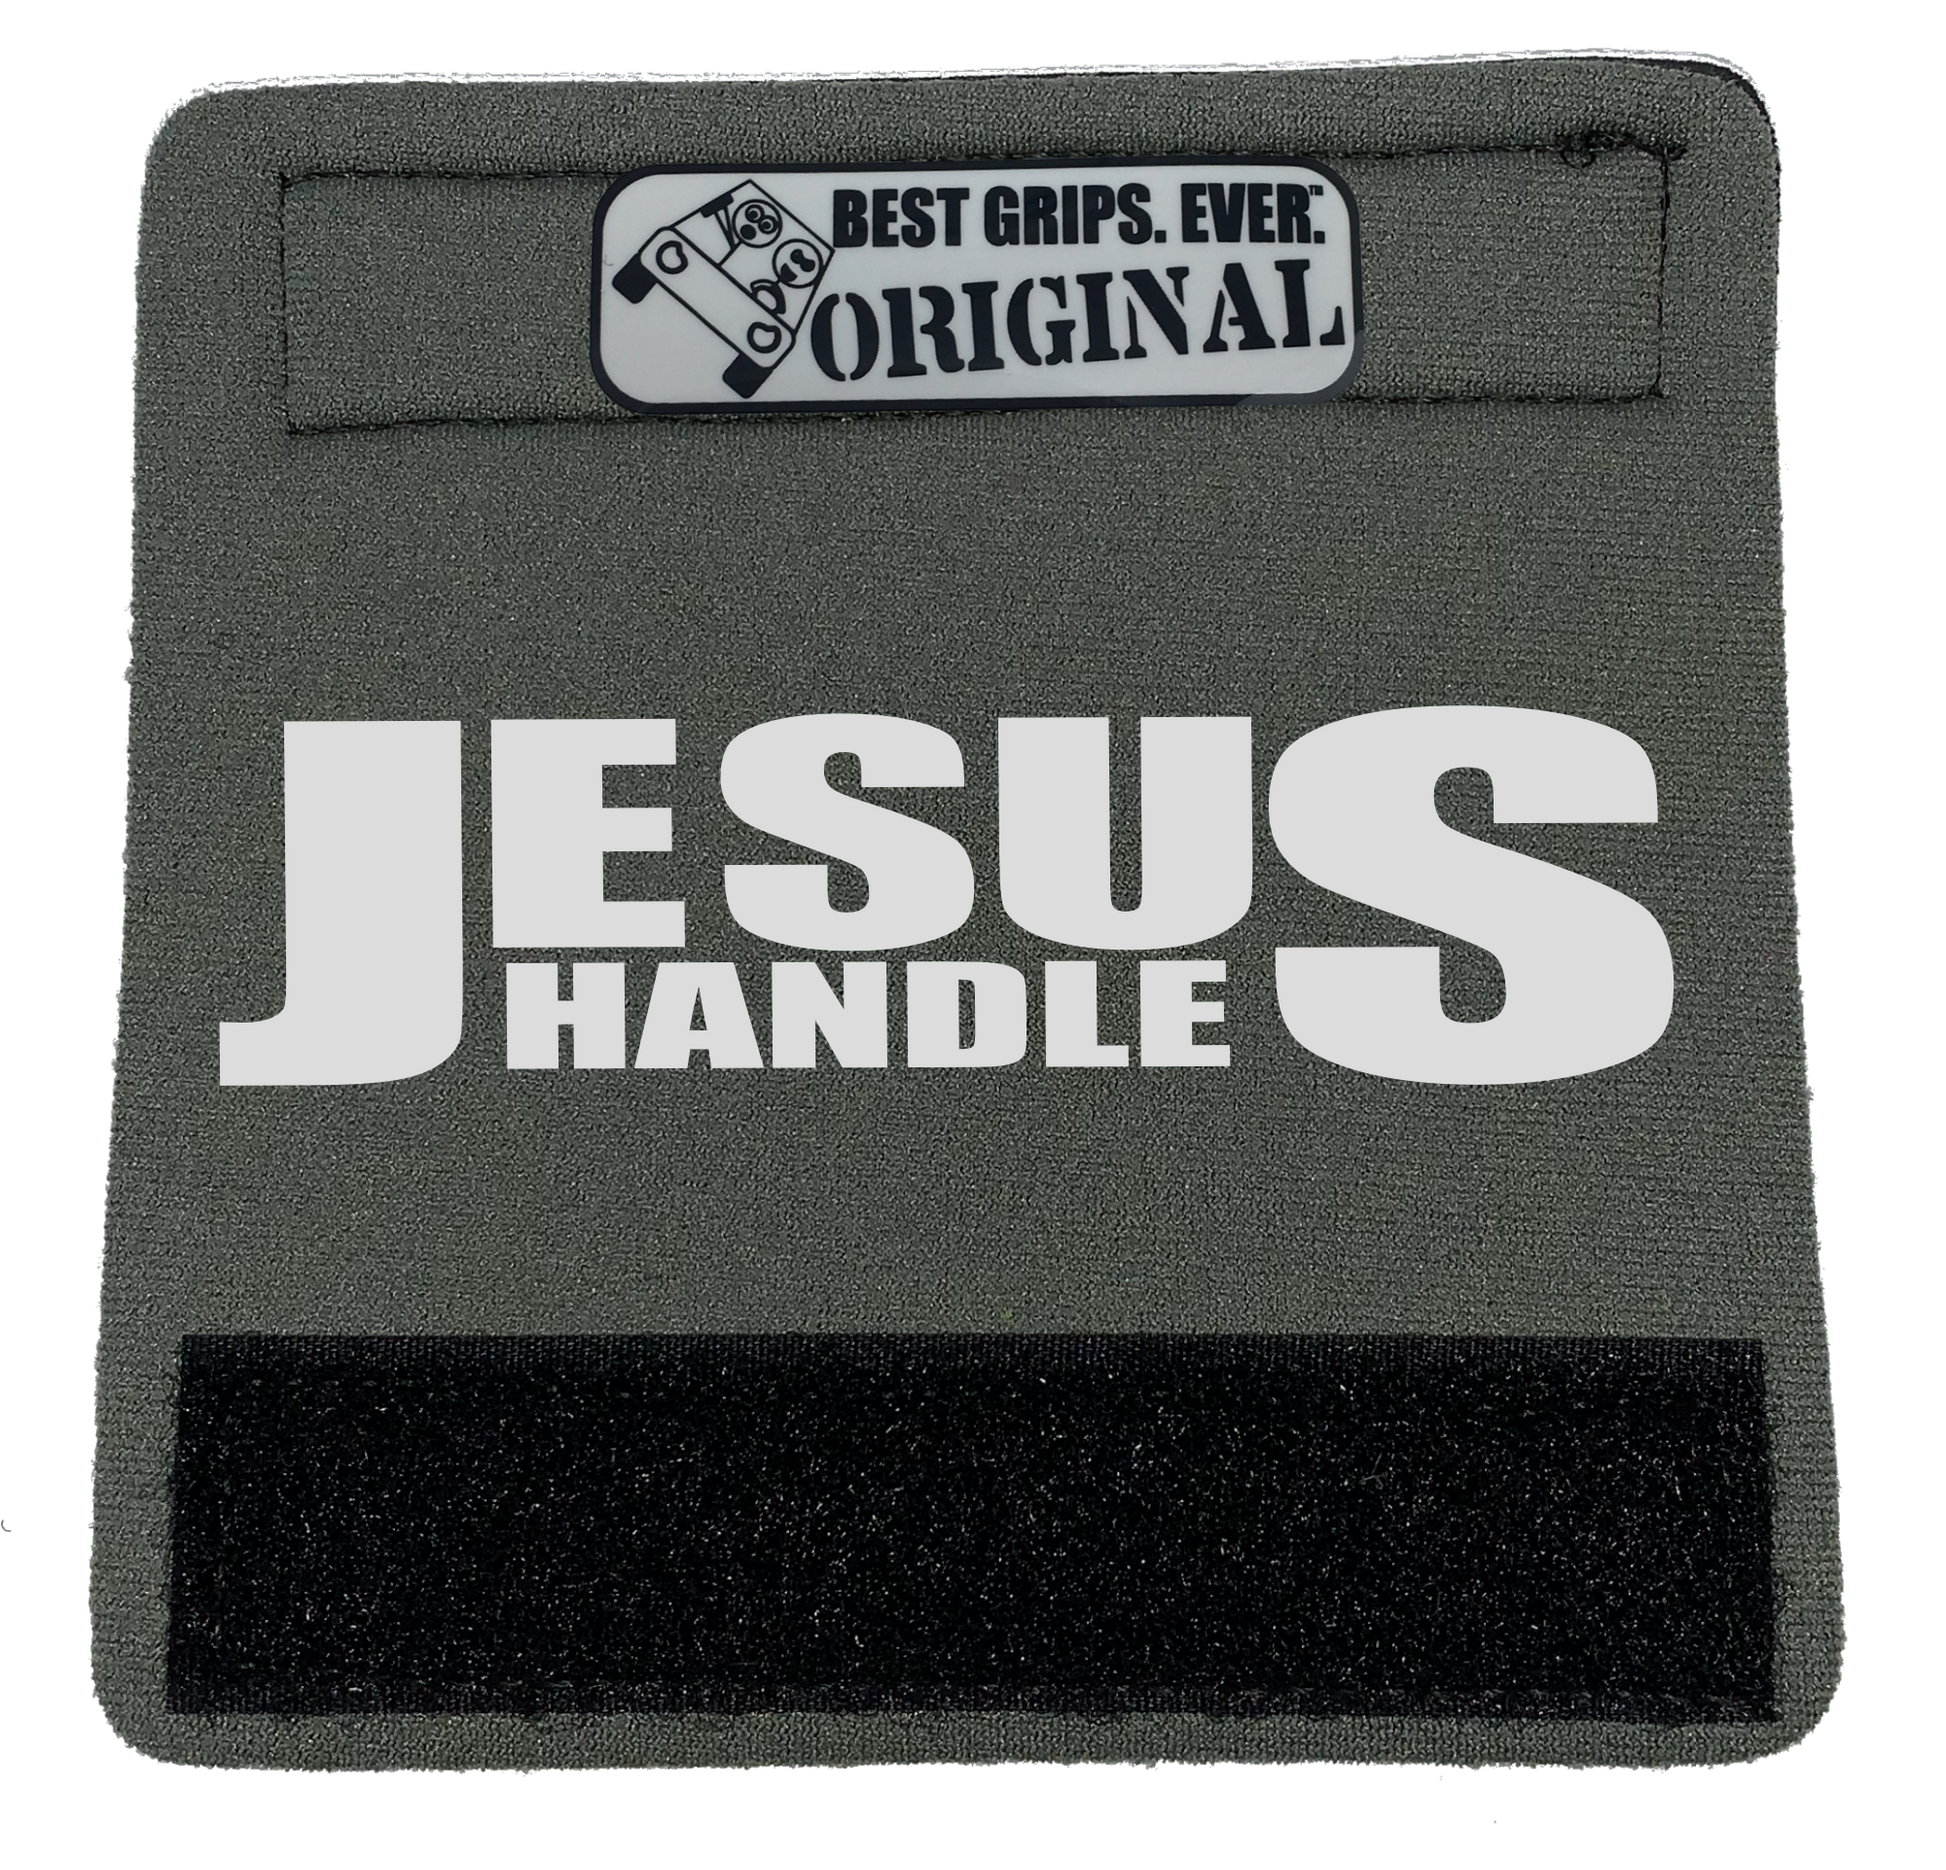 The Jesus Handle. - BEST GRIPS. EVER.®